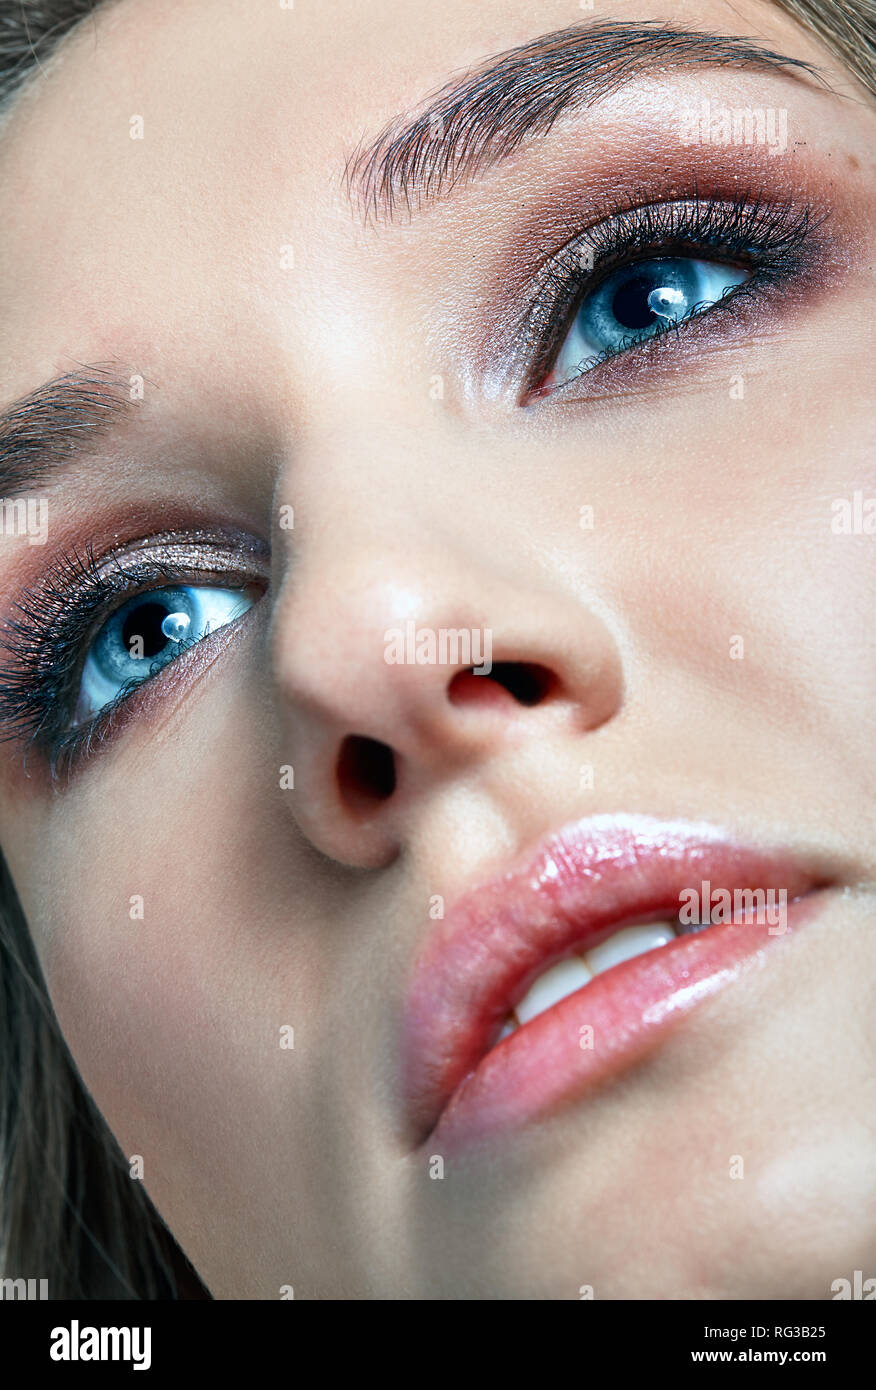 Closeup macro shot of human woman face. Female with smoky eyes makeup Stock Photo